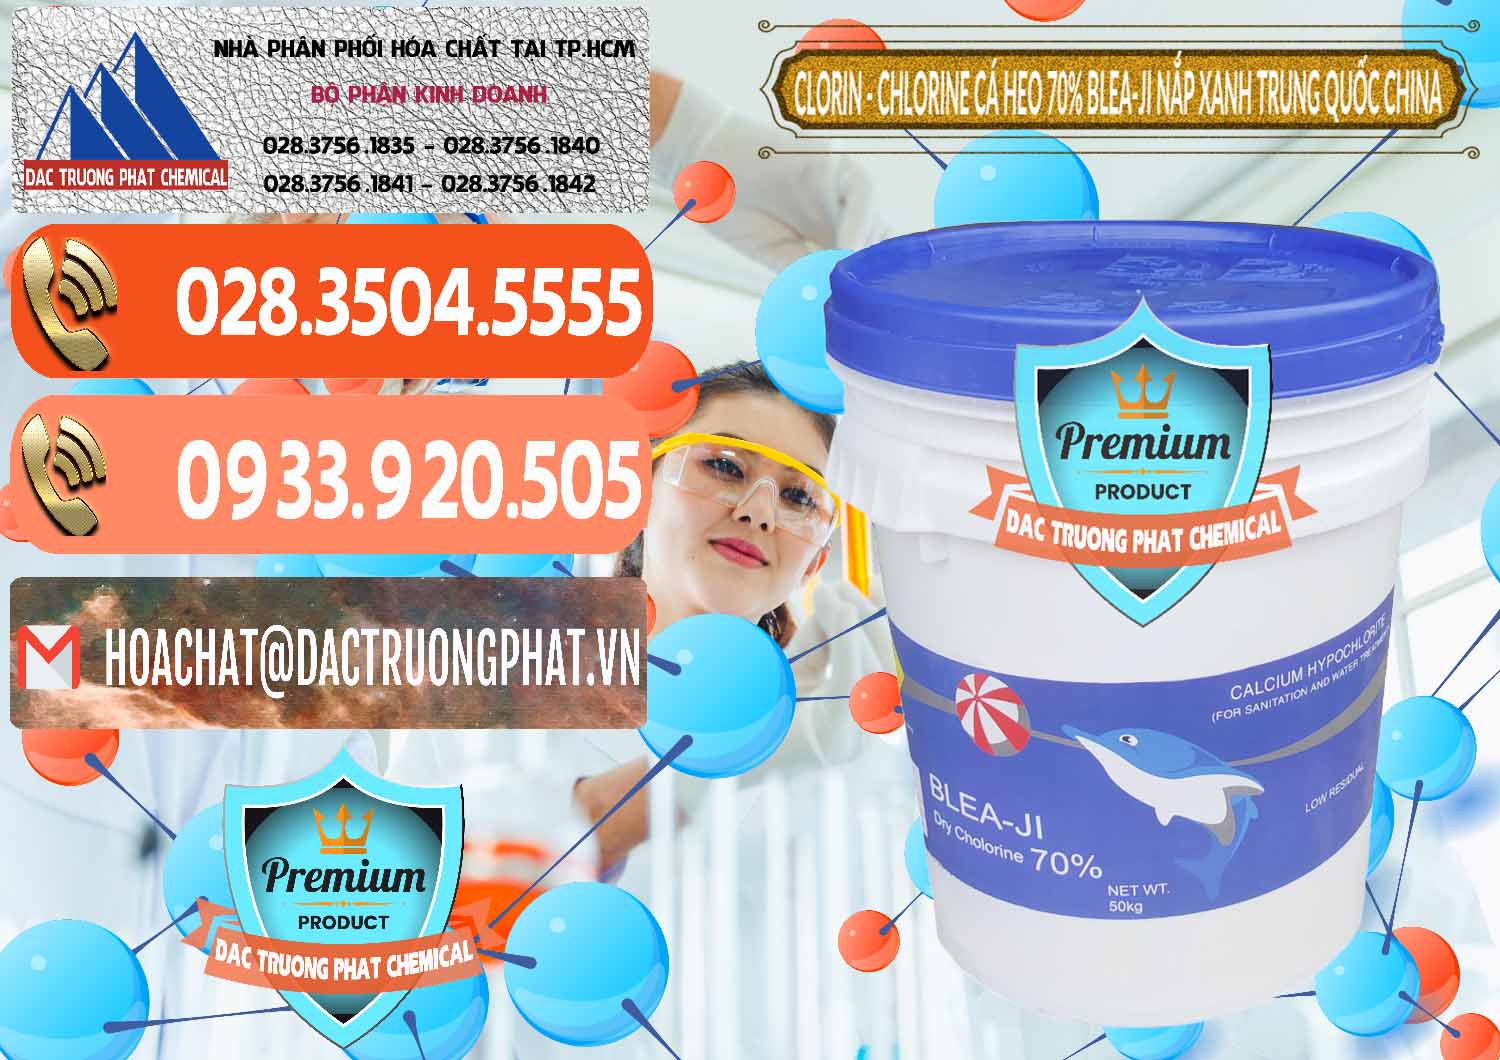 Chuyên bán và phân phối Clorin - Chlorine Cá Heo 70% Cá Heo Blea-Ji Thùng Tròn Nắp Xanh Trung Quốc China - 0208 - Nhà cung cấp & bán hóa chất tại TP.HCM - hoachatmientay.com